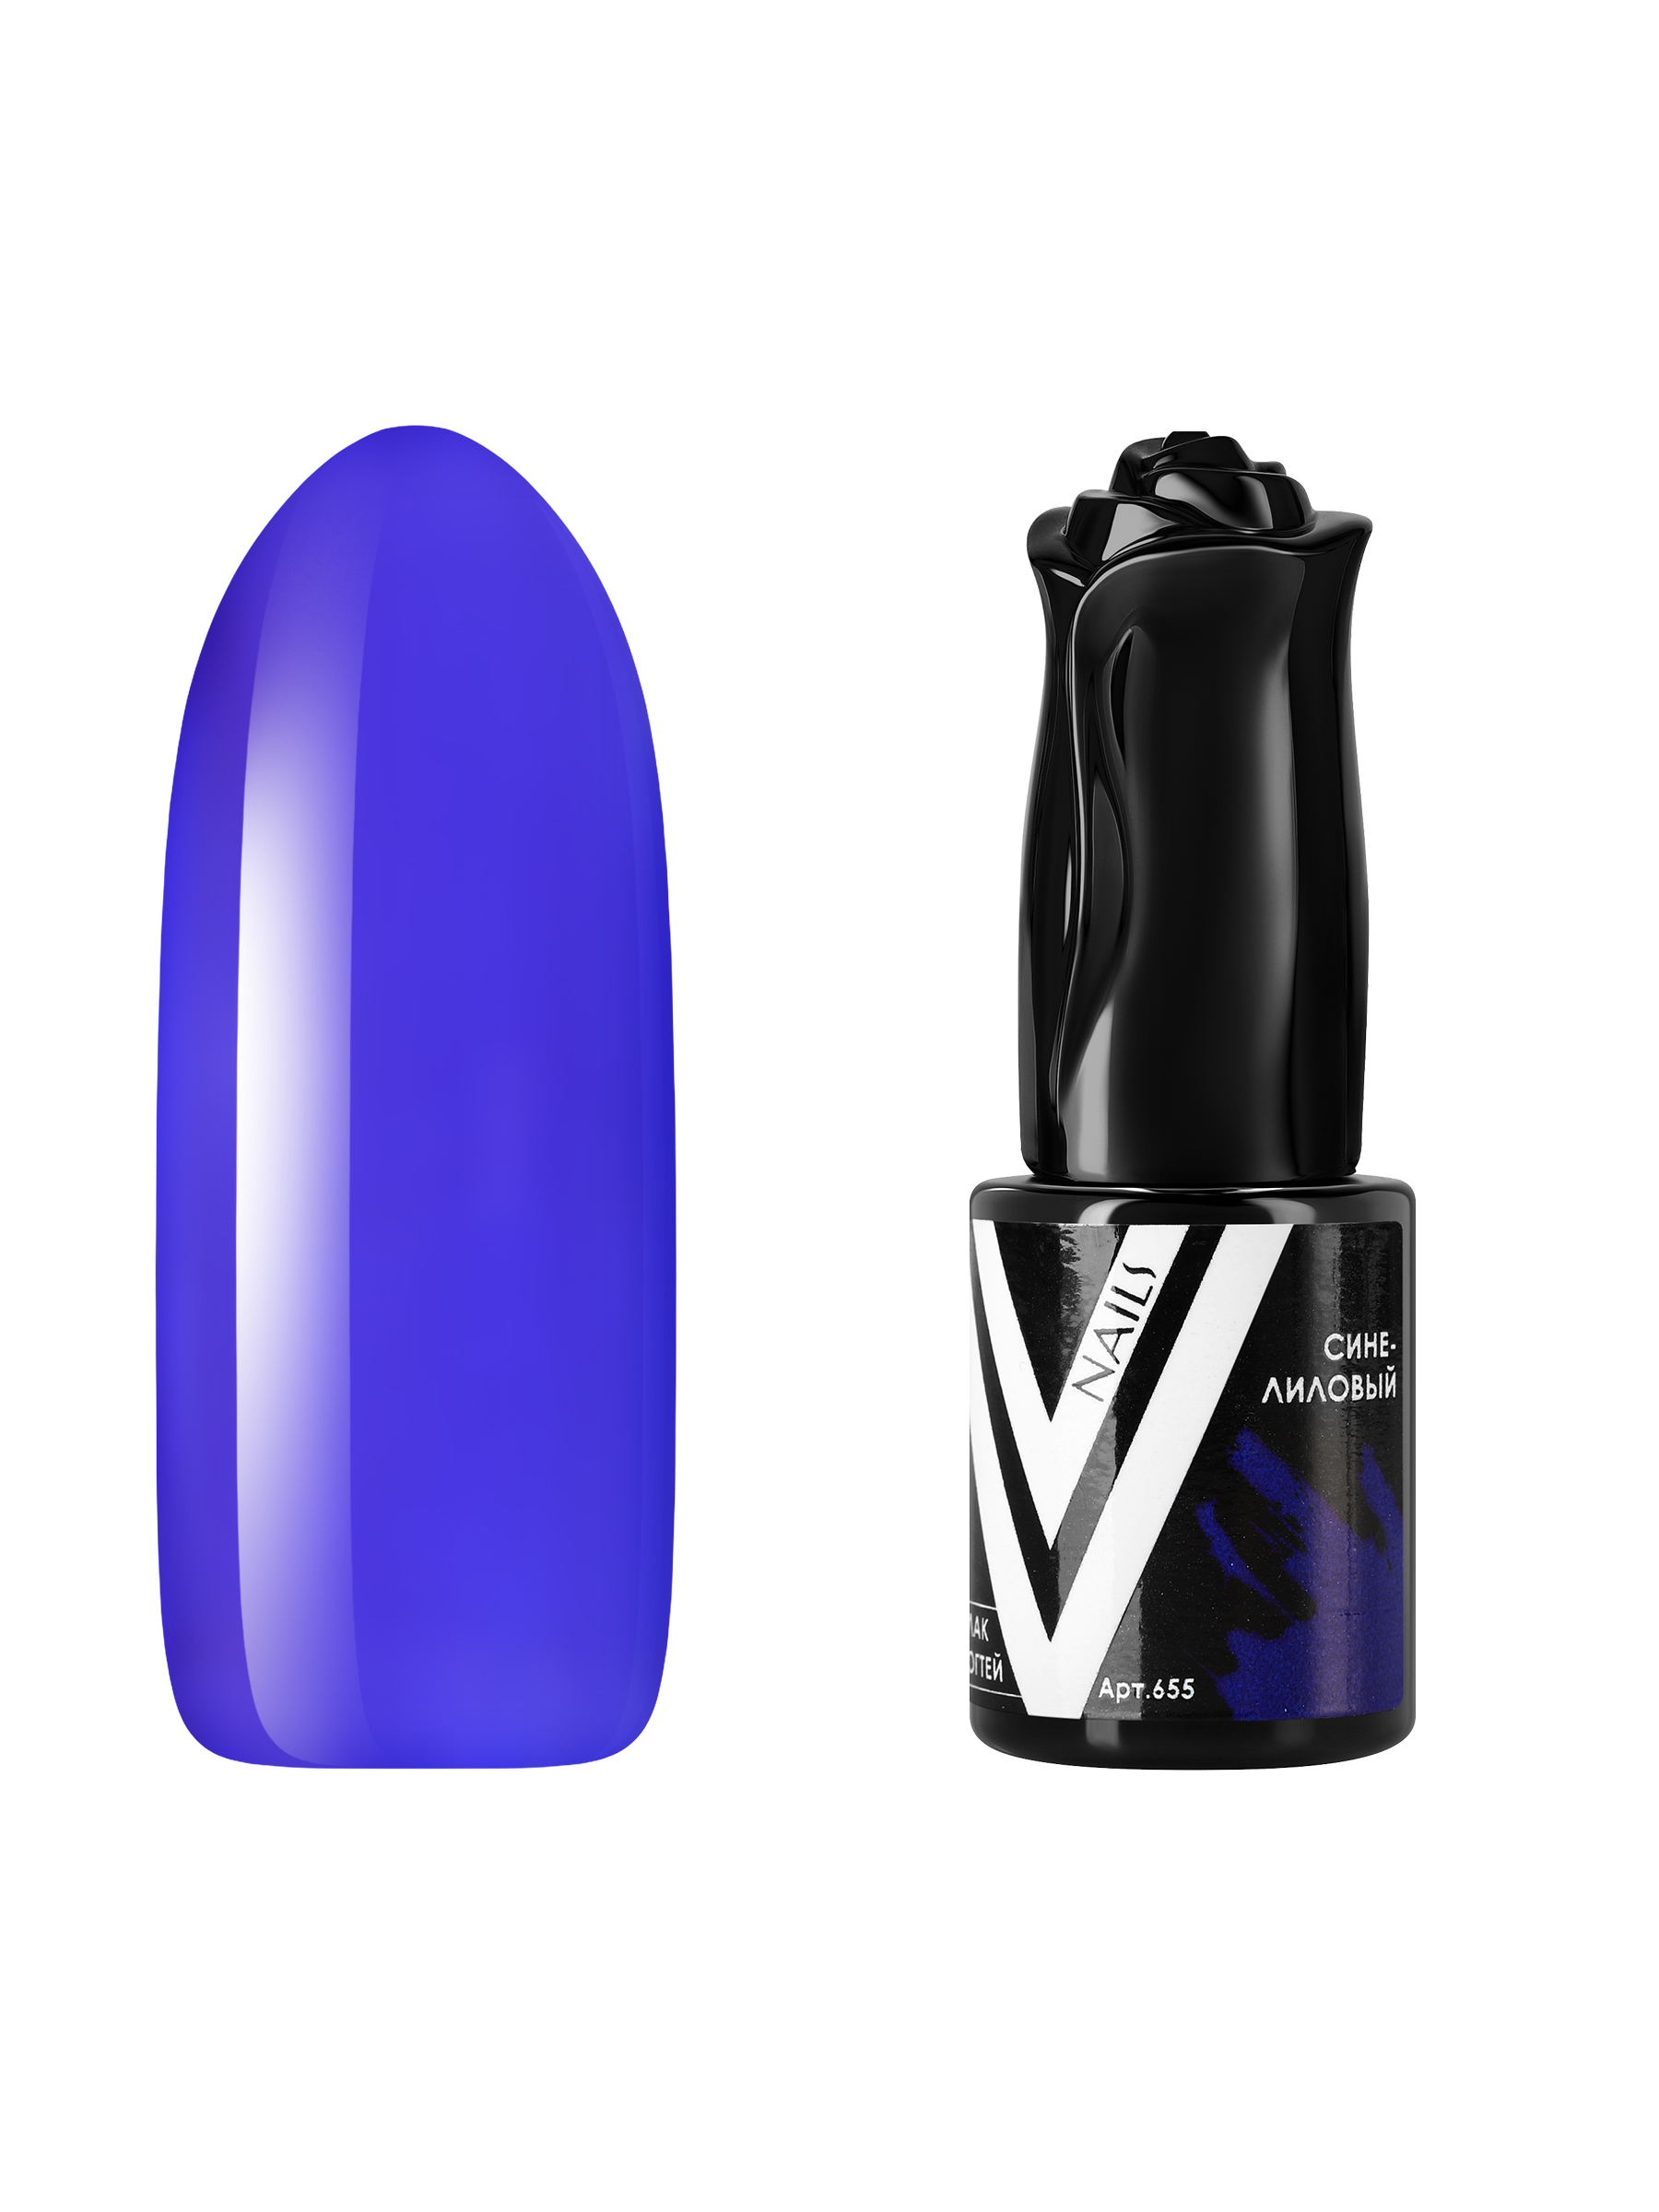 Гель-лак витражный Vogue Nails для аквариумного дизайна прозрачный фиолетовый синий, 10 мл железная дорога с новым годом 320 см радиоуправление эффект дыма